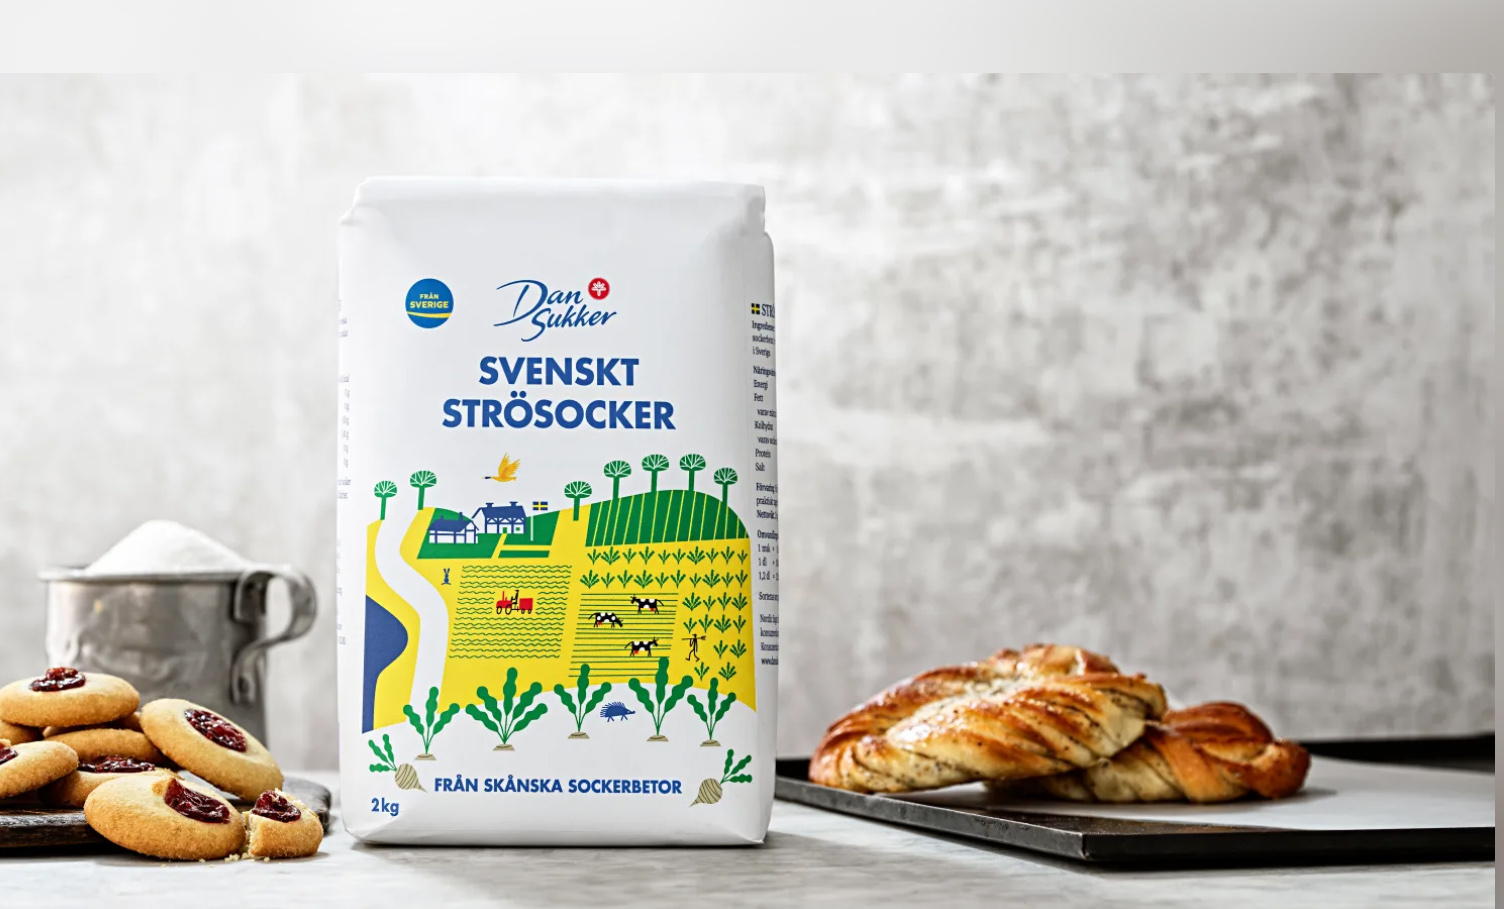 TVstation Susteen vinde Dansukker lanserar ny design på det svenska strösockret - Dagligvaruhandeln  Senaste Nyheterna